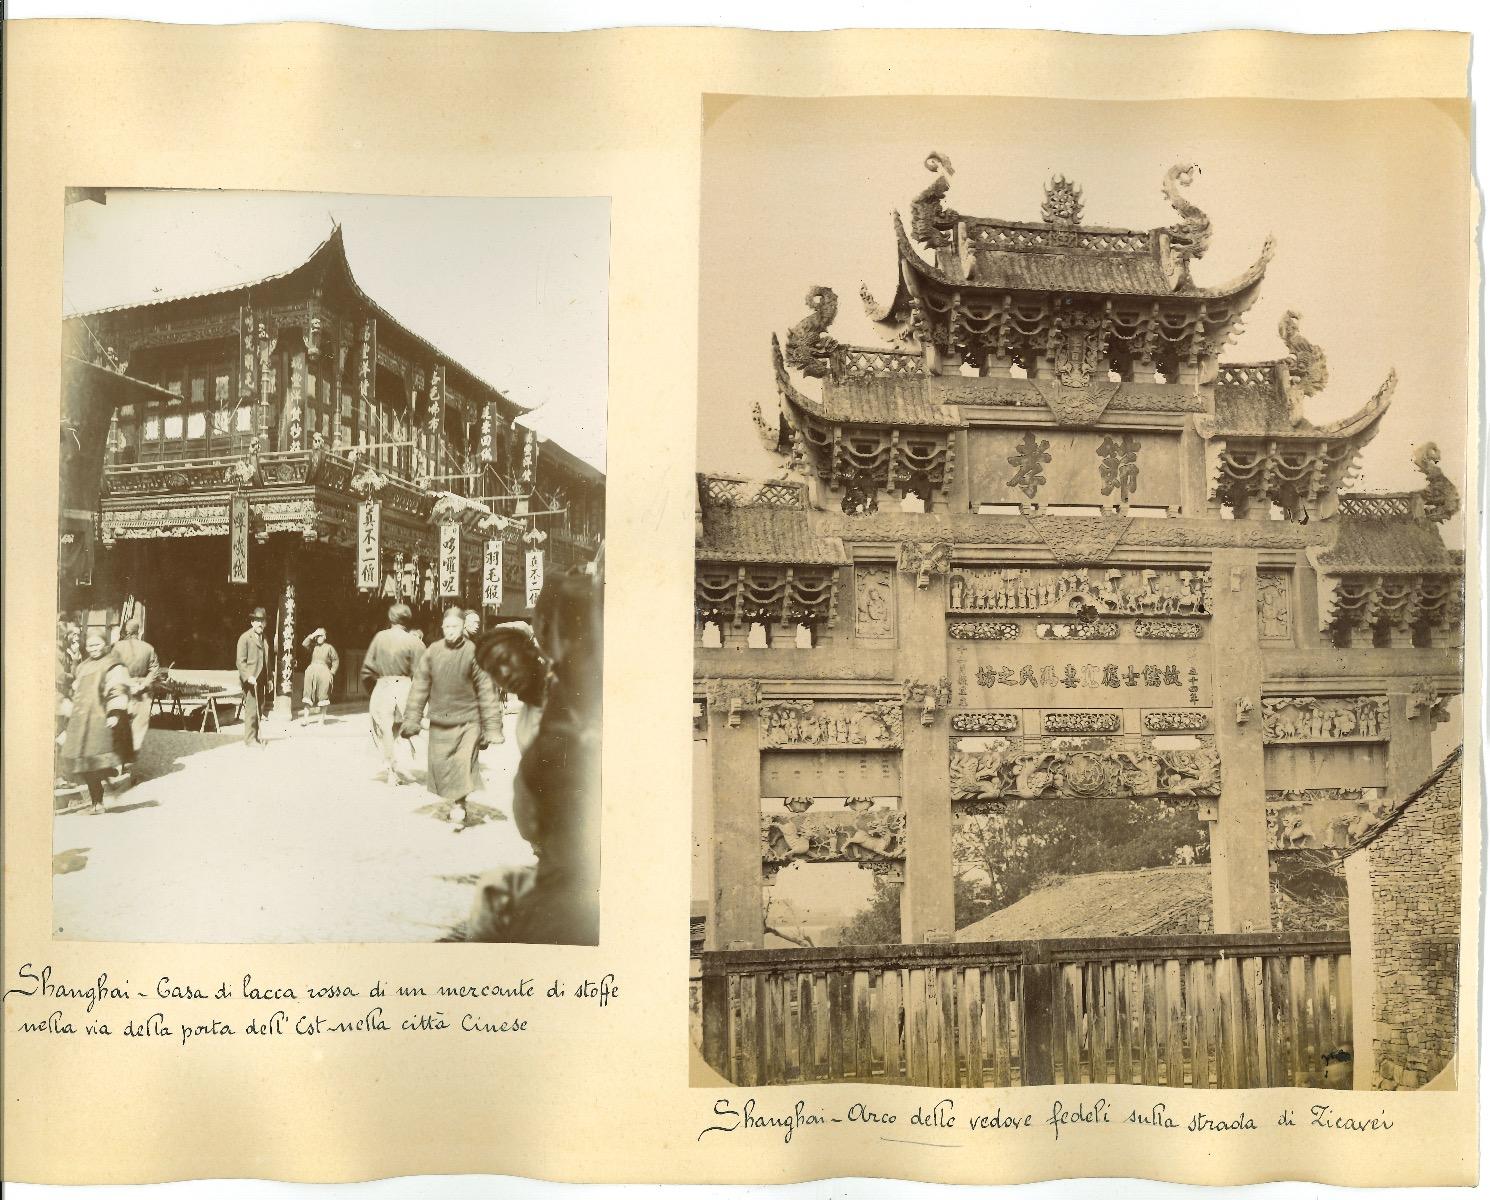 Unknown Landscape Photograph - Ancient Shanghai Architecture and Temples - Original Albumen Print - 1890s